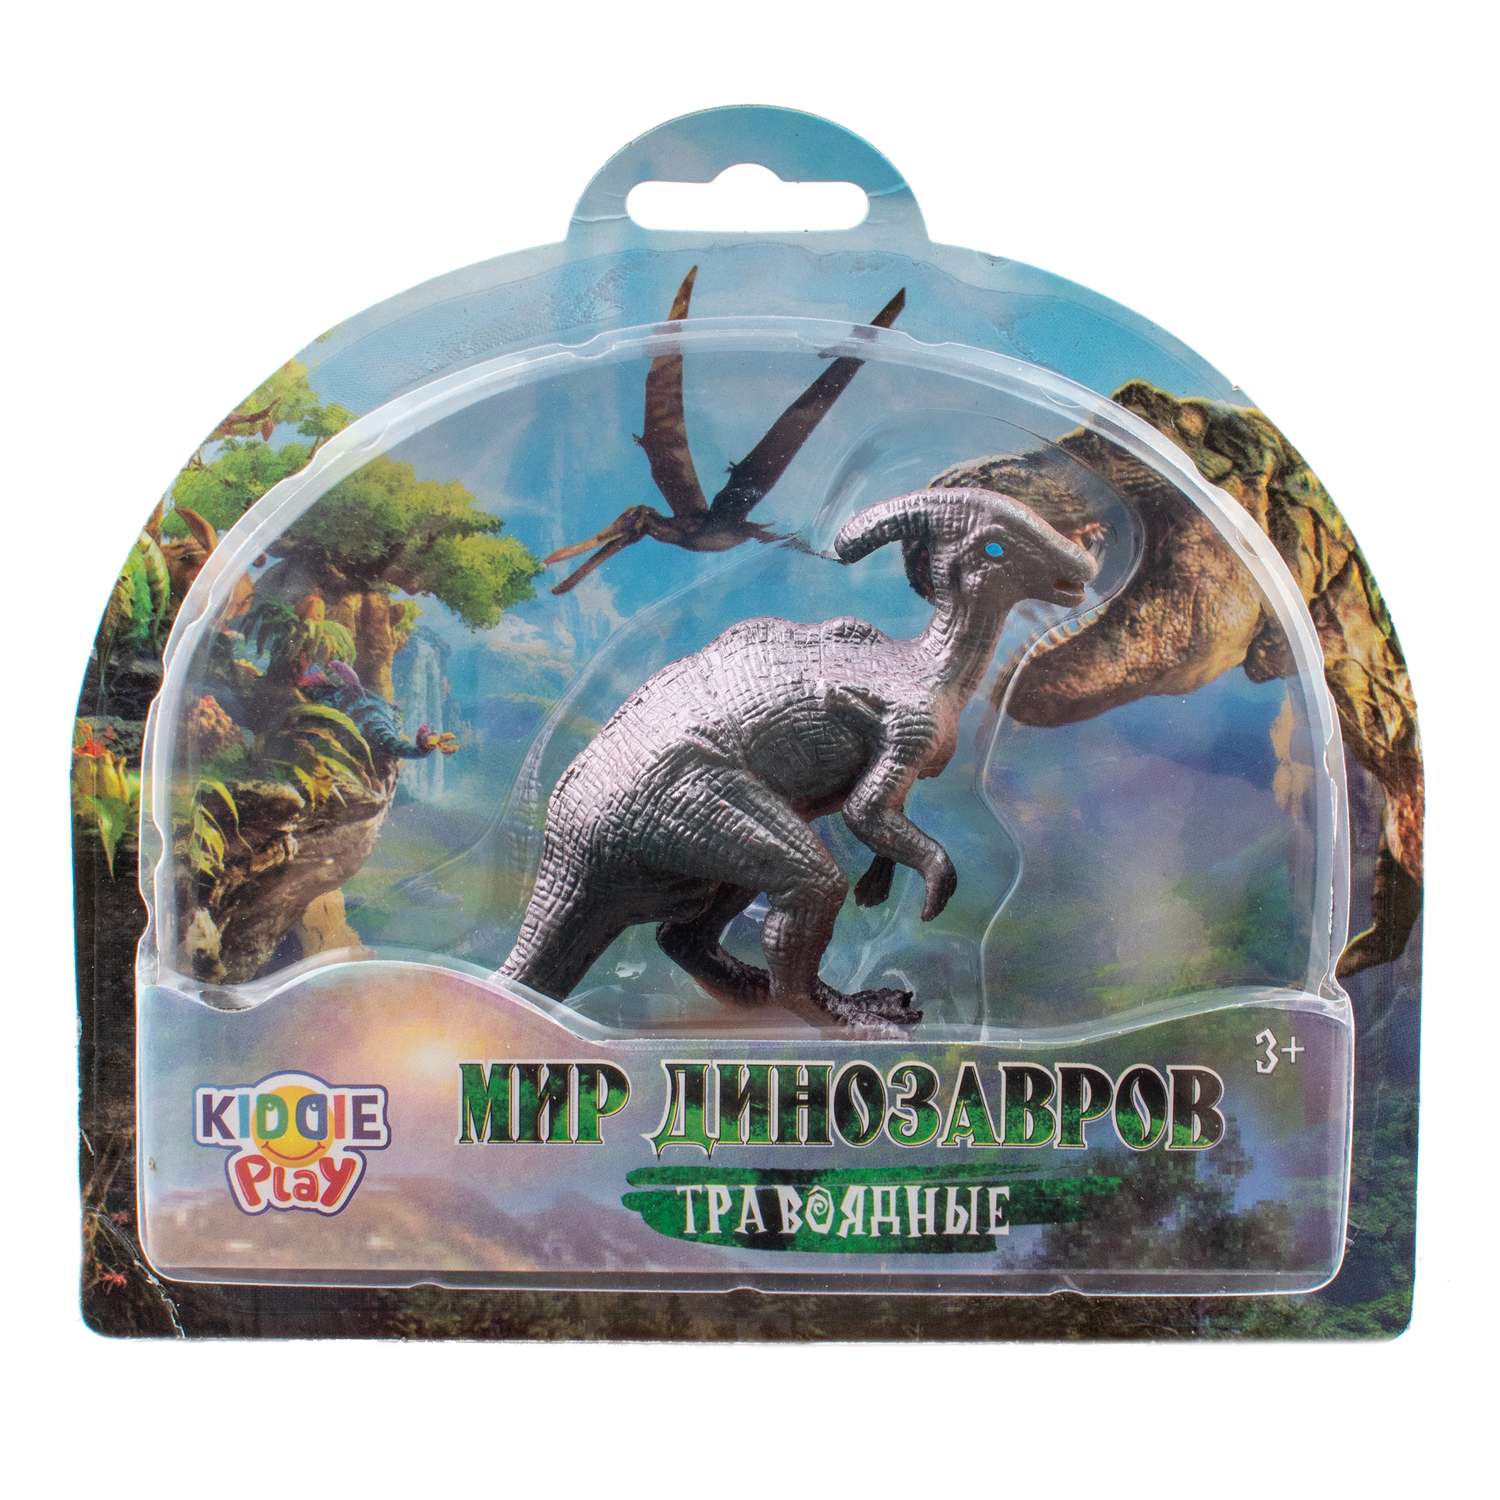 Игрушка KiddiePlay Динозавр травоядный в ассортименте 12602 - фото 2